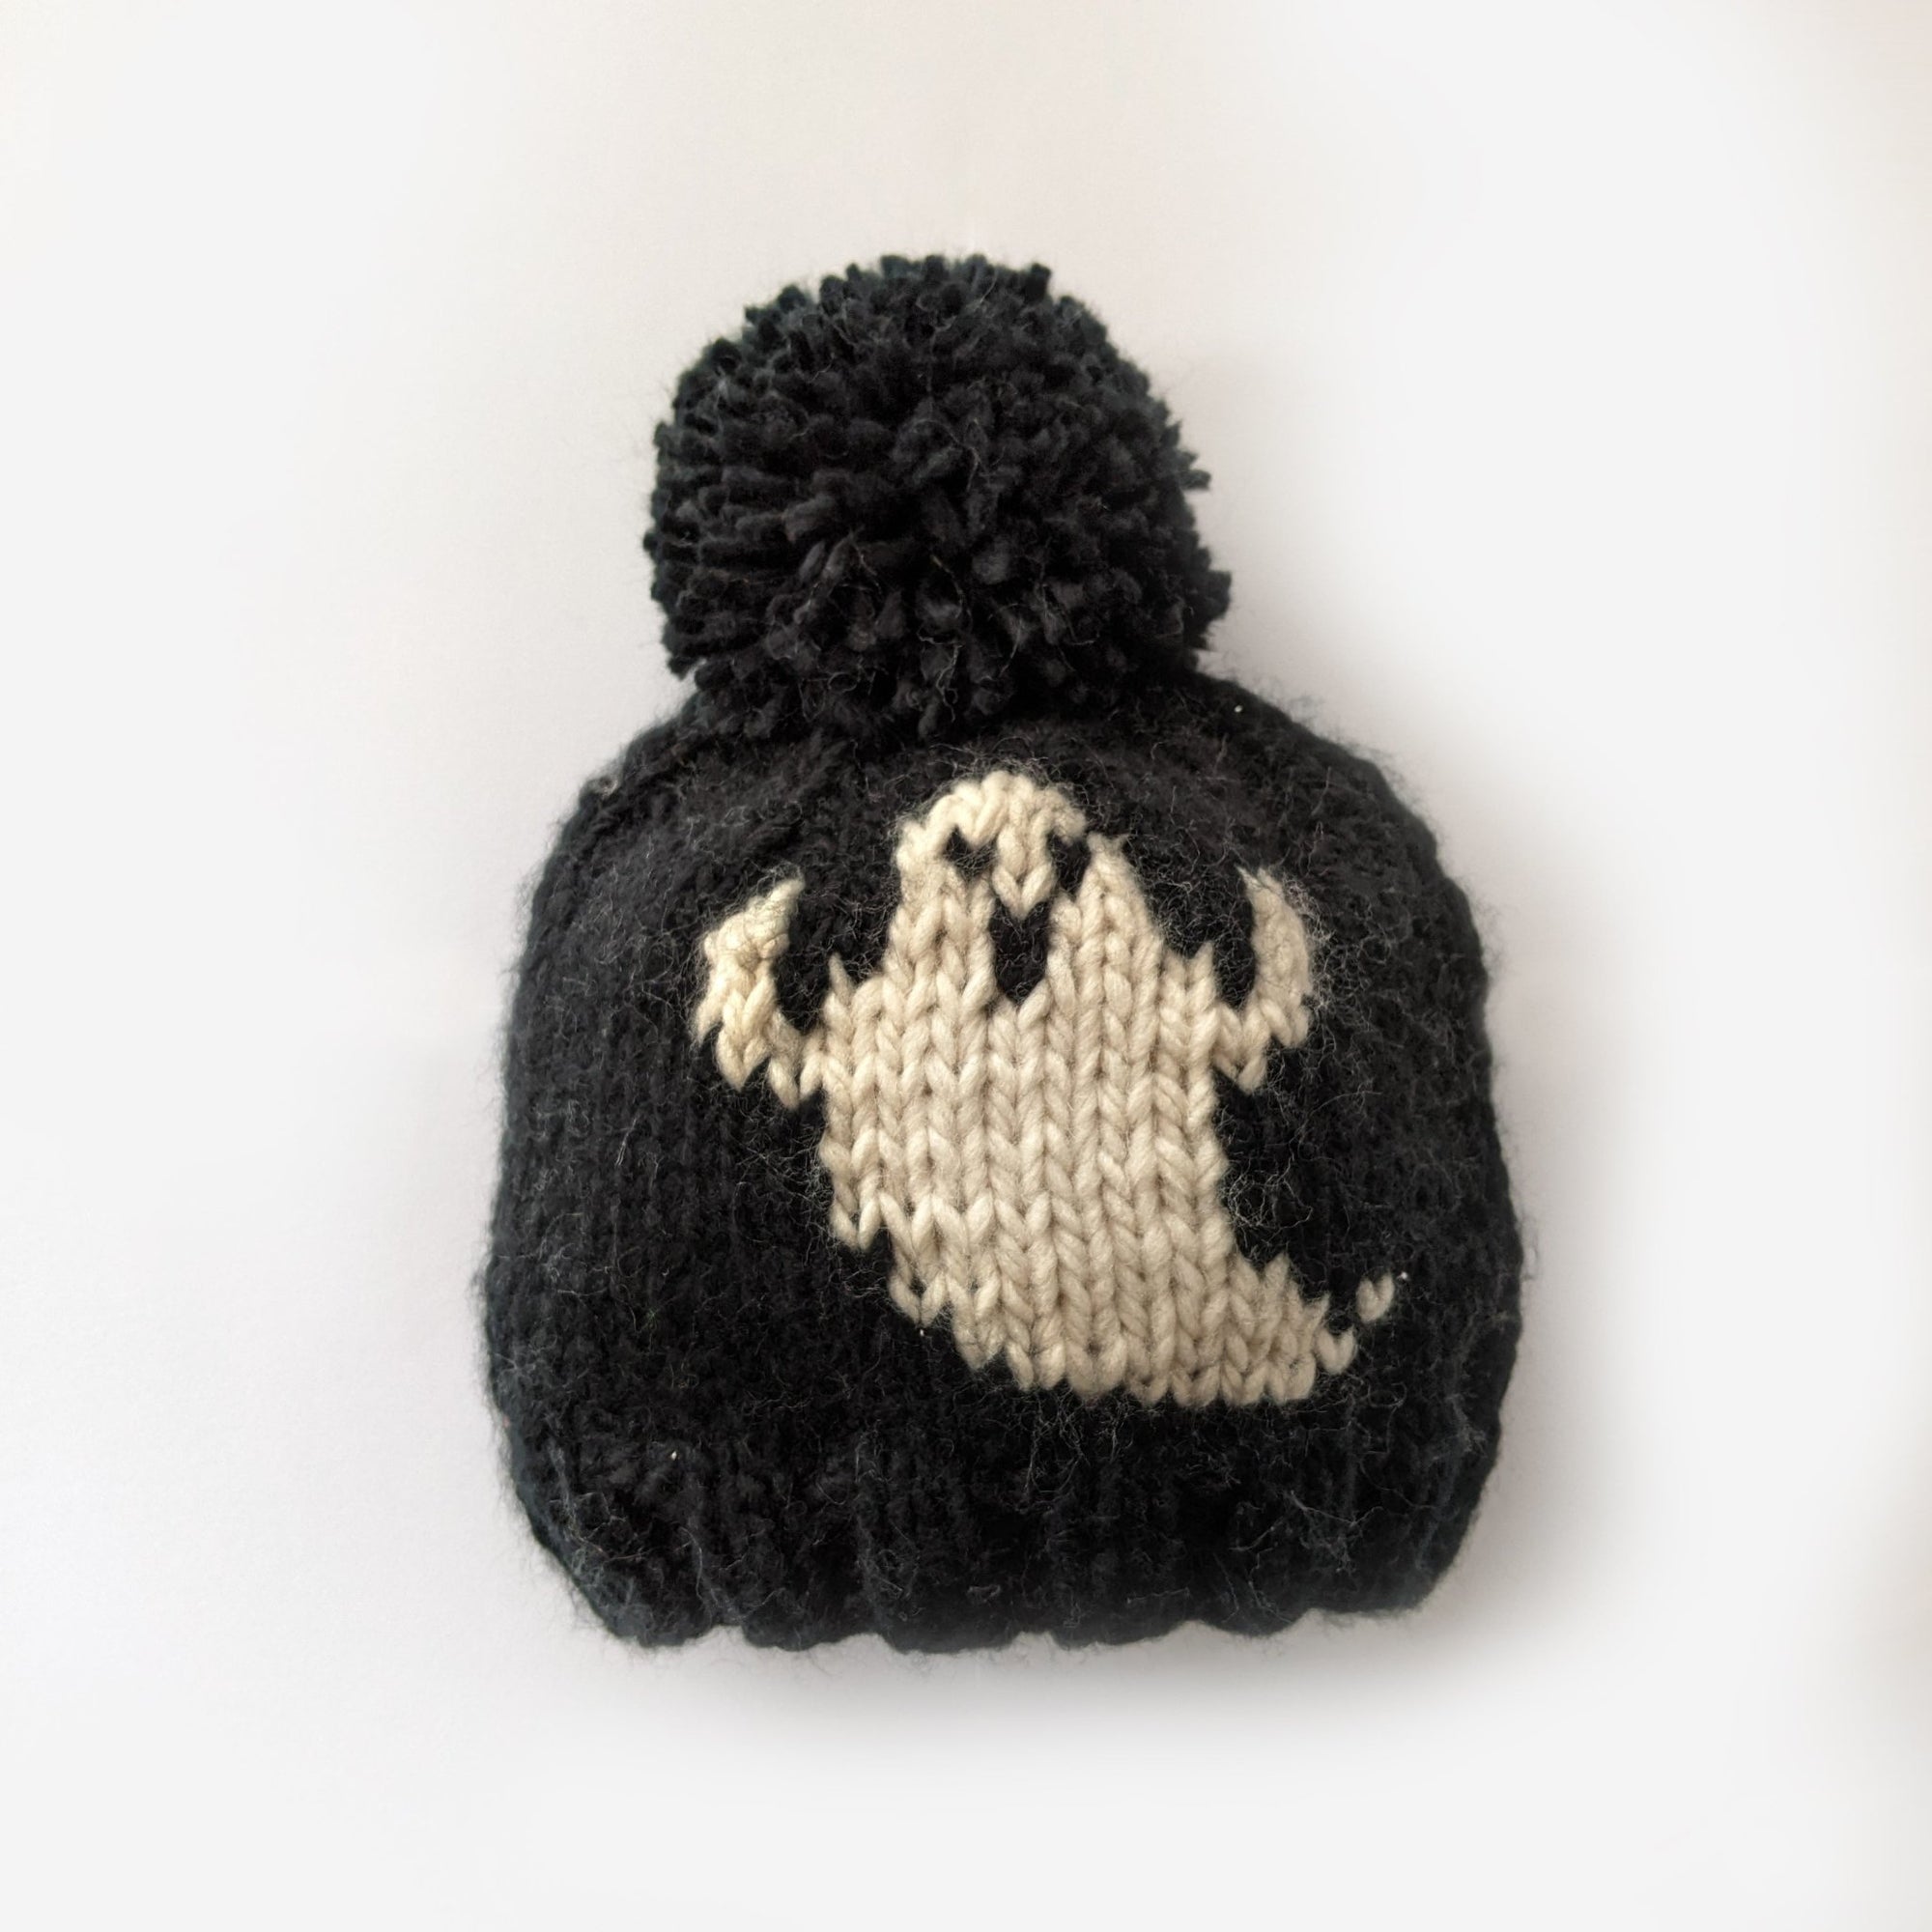 Ghost Beanie Hat due Jul/Aug - Beanie Hats